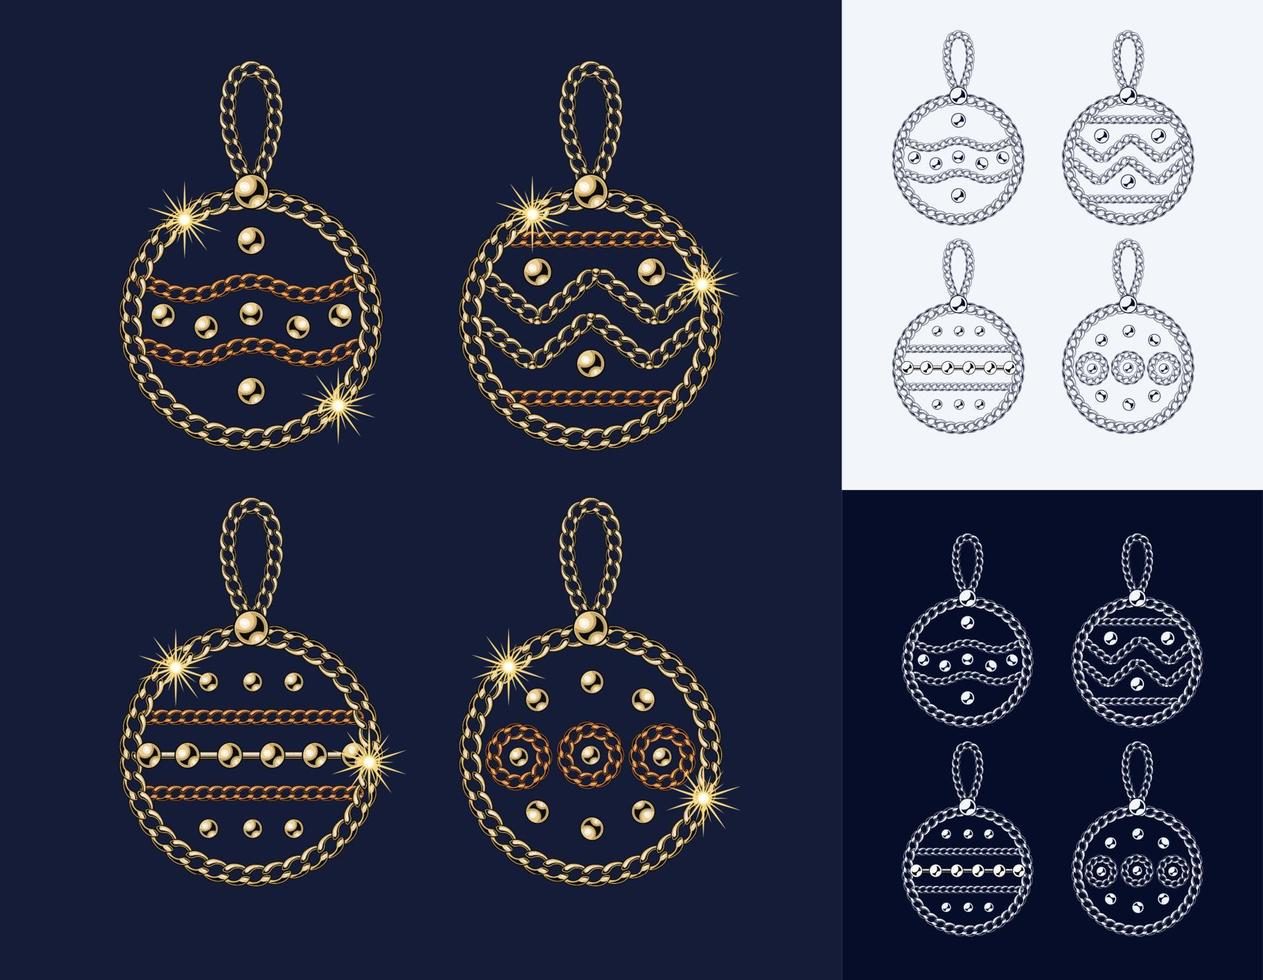 sombrero Siete Viaje bolas de navidad hechas de joyas cadenas de oro y bronce, cuentas de bolas  brillantes ilustración